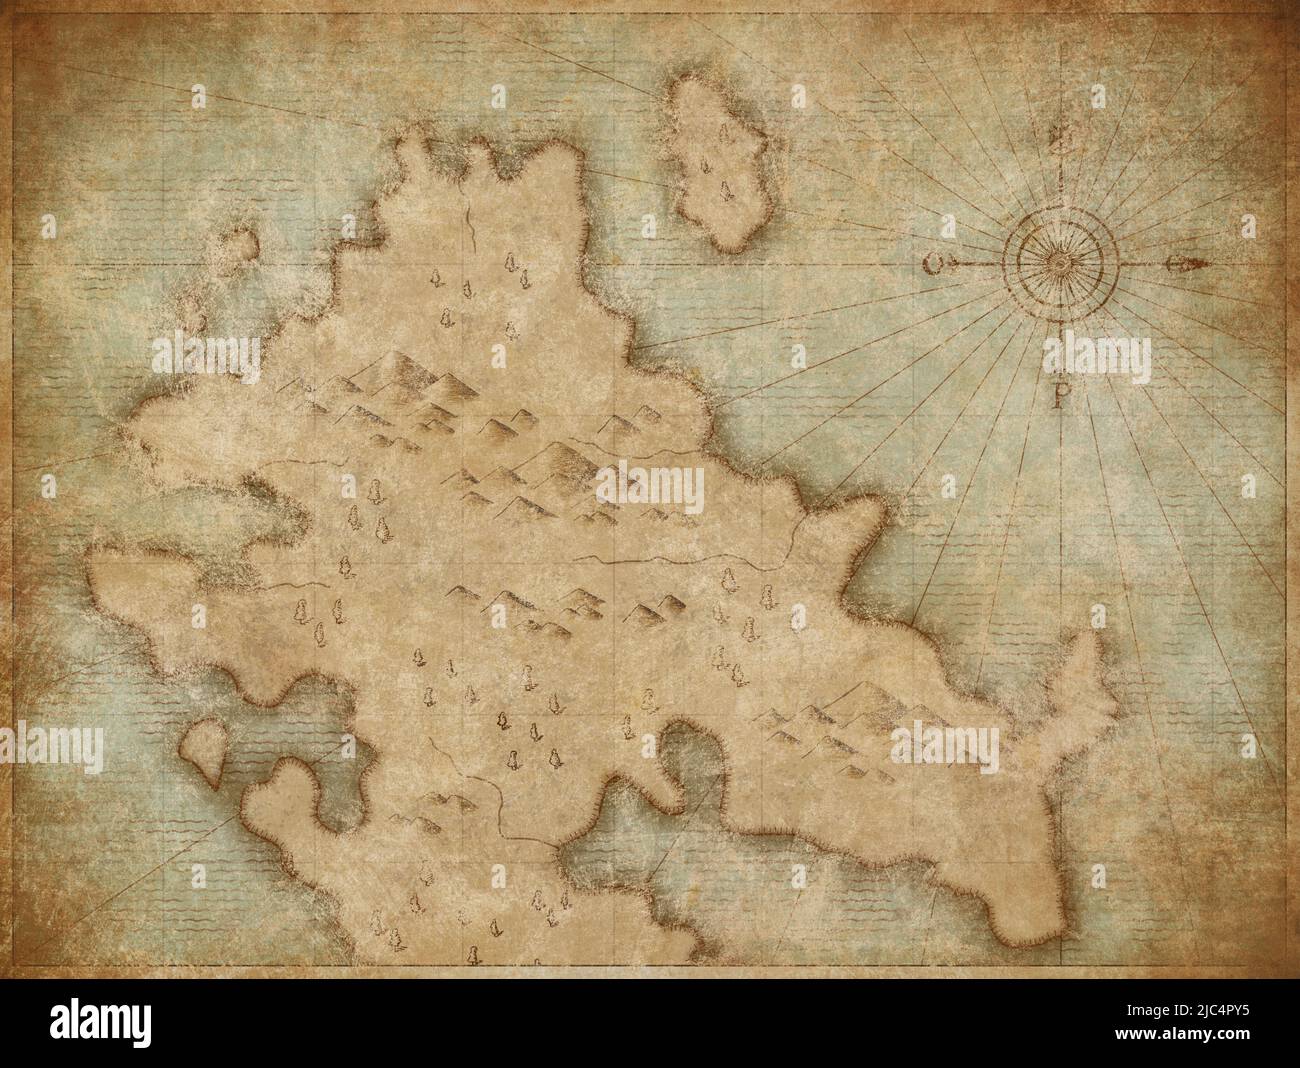 carte des pirates nautiques médiévaux avec trésors cachés Banque D'Images